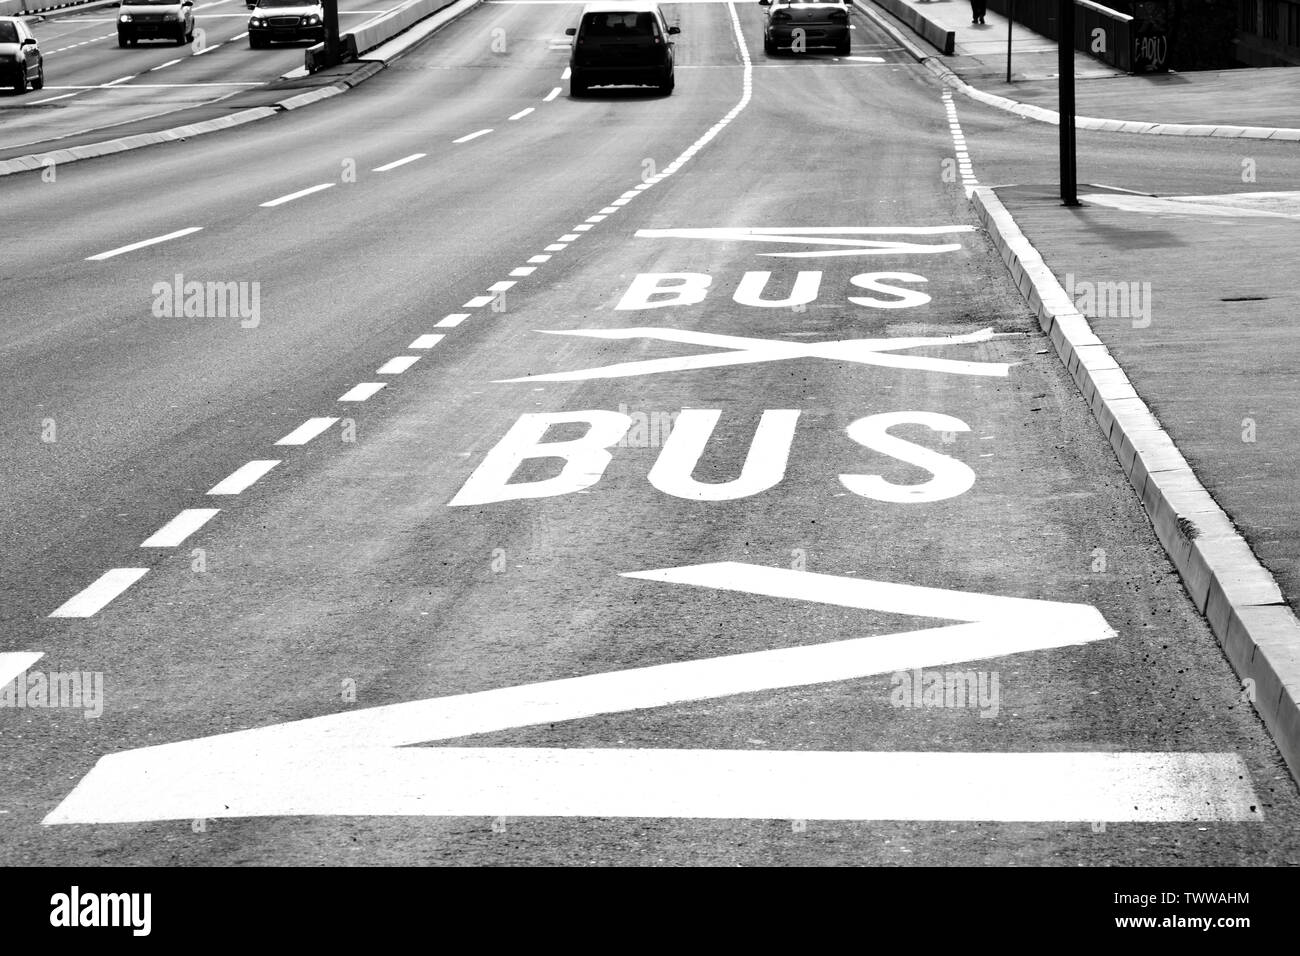 Marques de surface de la route à l'arrêt de bus sur la rue de la ville en noir et blanc de contraste élevé Banque D'Images